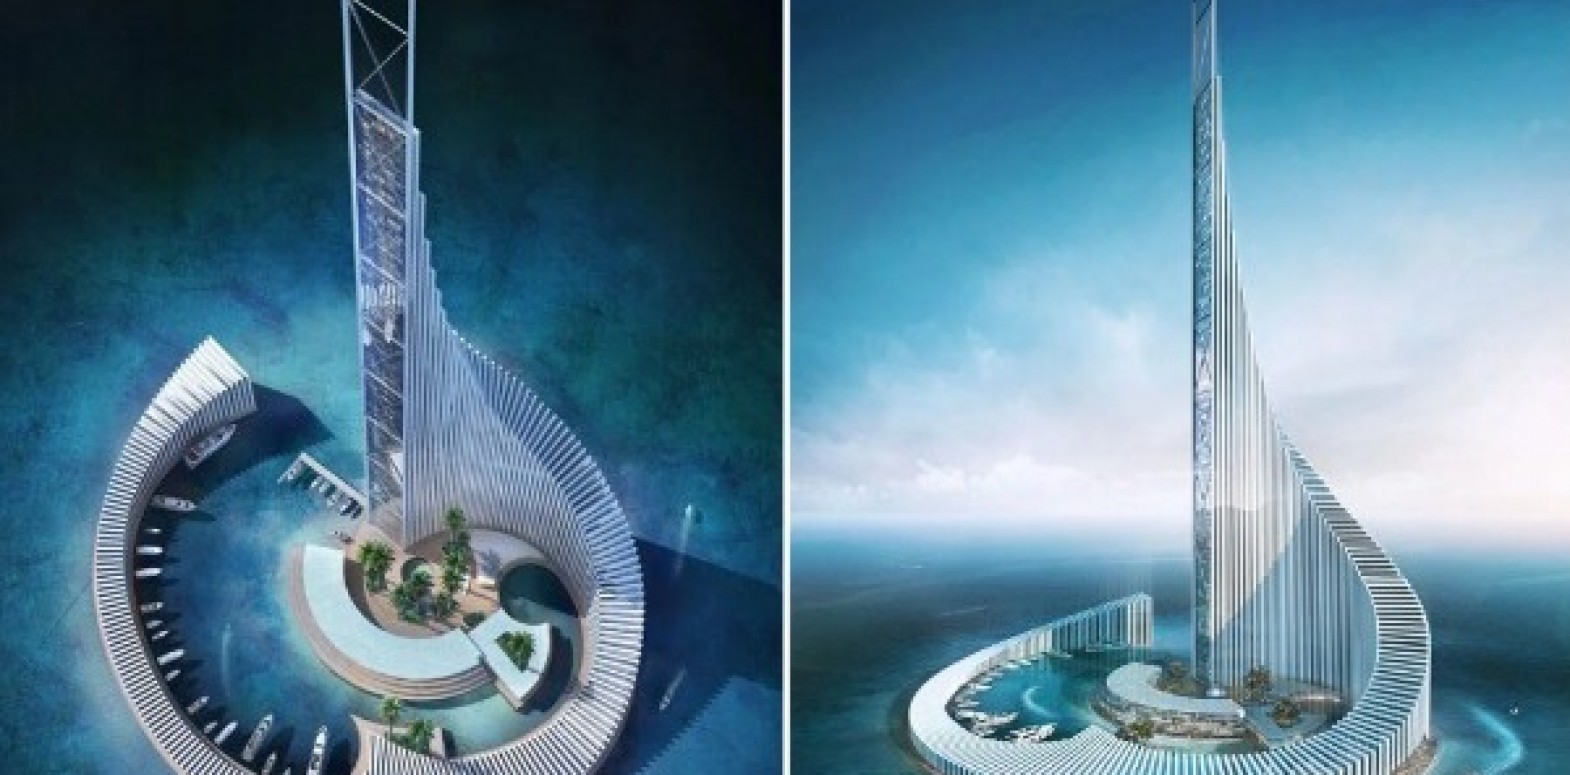 هذه الصورة ليست لتصميم "أكبر فندق في العالم" سيبنى بمصر